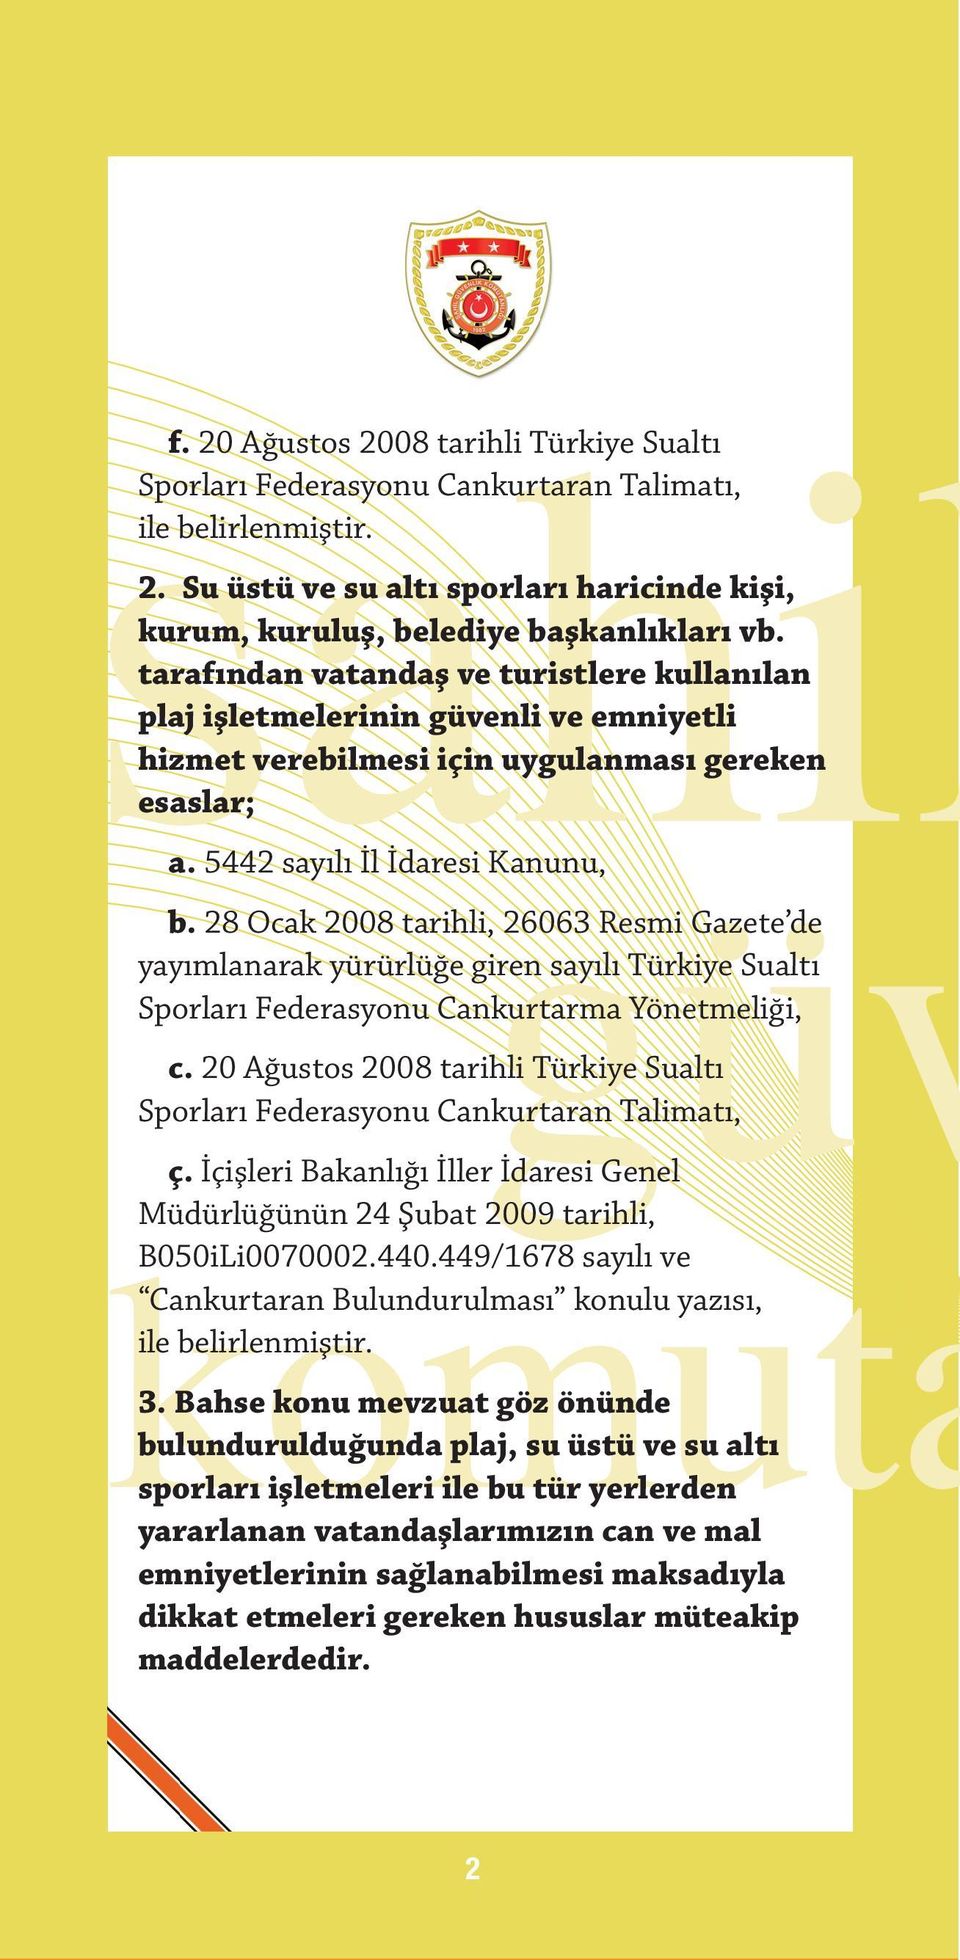 28 Ocak 2008 tarihli, 26063 Resmi Gazete de yayımlanarak yürürlüğe giren sayılı Türkiye Sualtı Sporları Federasyonu Cankurtarma Yönetmeliği, c.